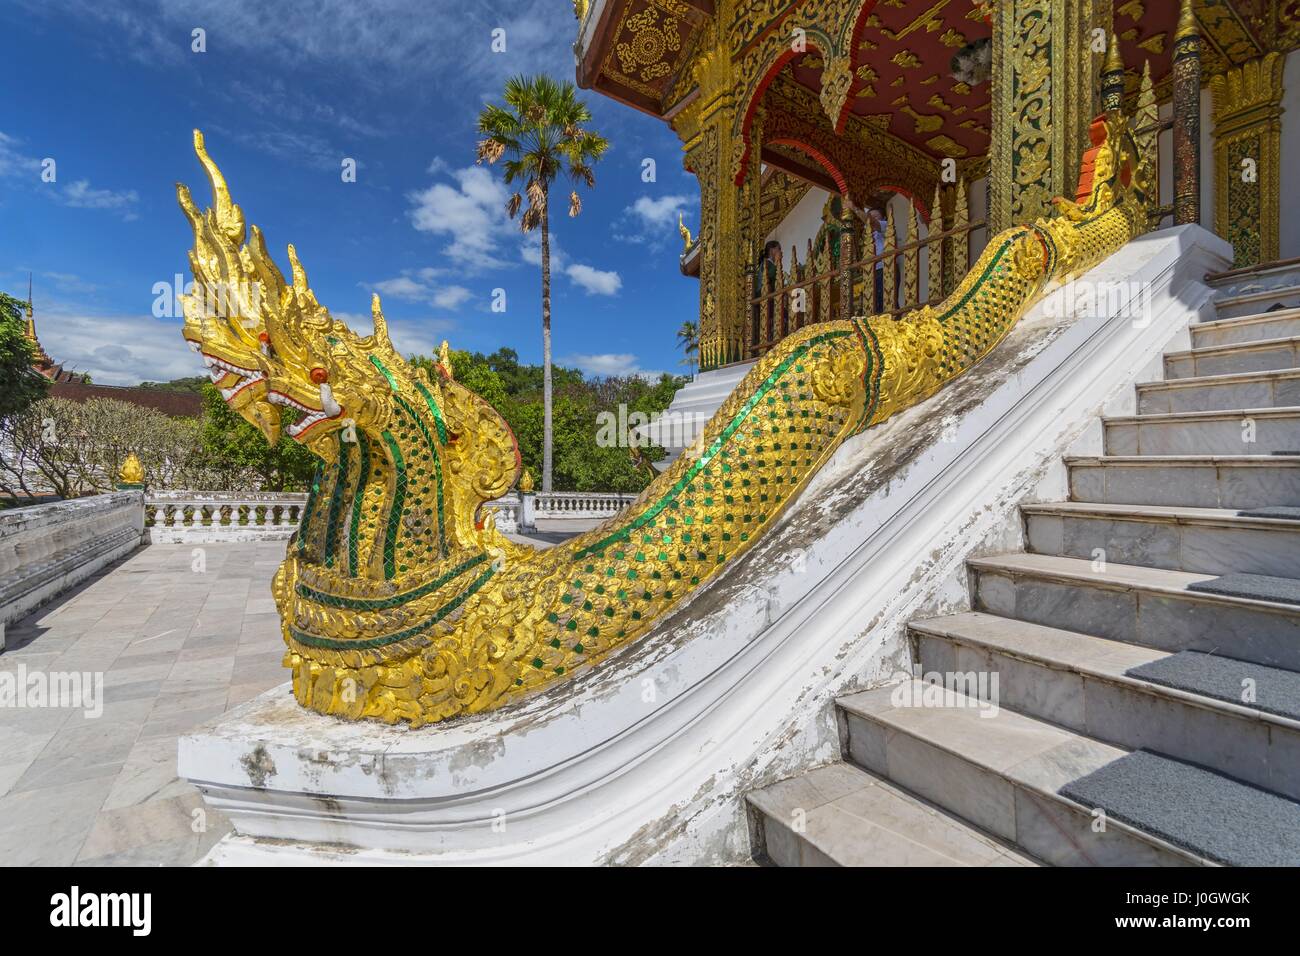 Golden naga (King Cobras) decorate teh stairs of Haw Pha Bang (or Palace Chapel) at the Royal Palace Museum in Luang Prabang, Laos. Stock Photo